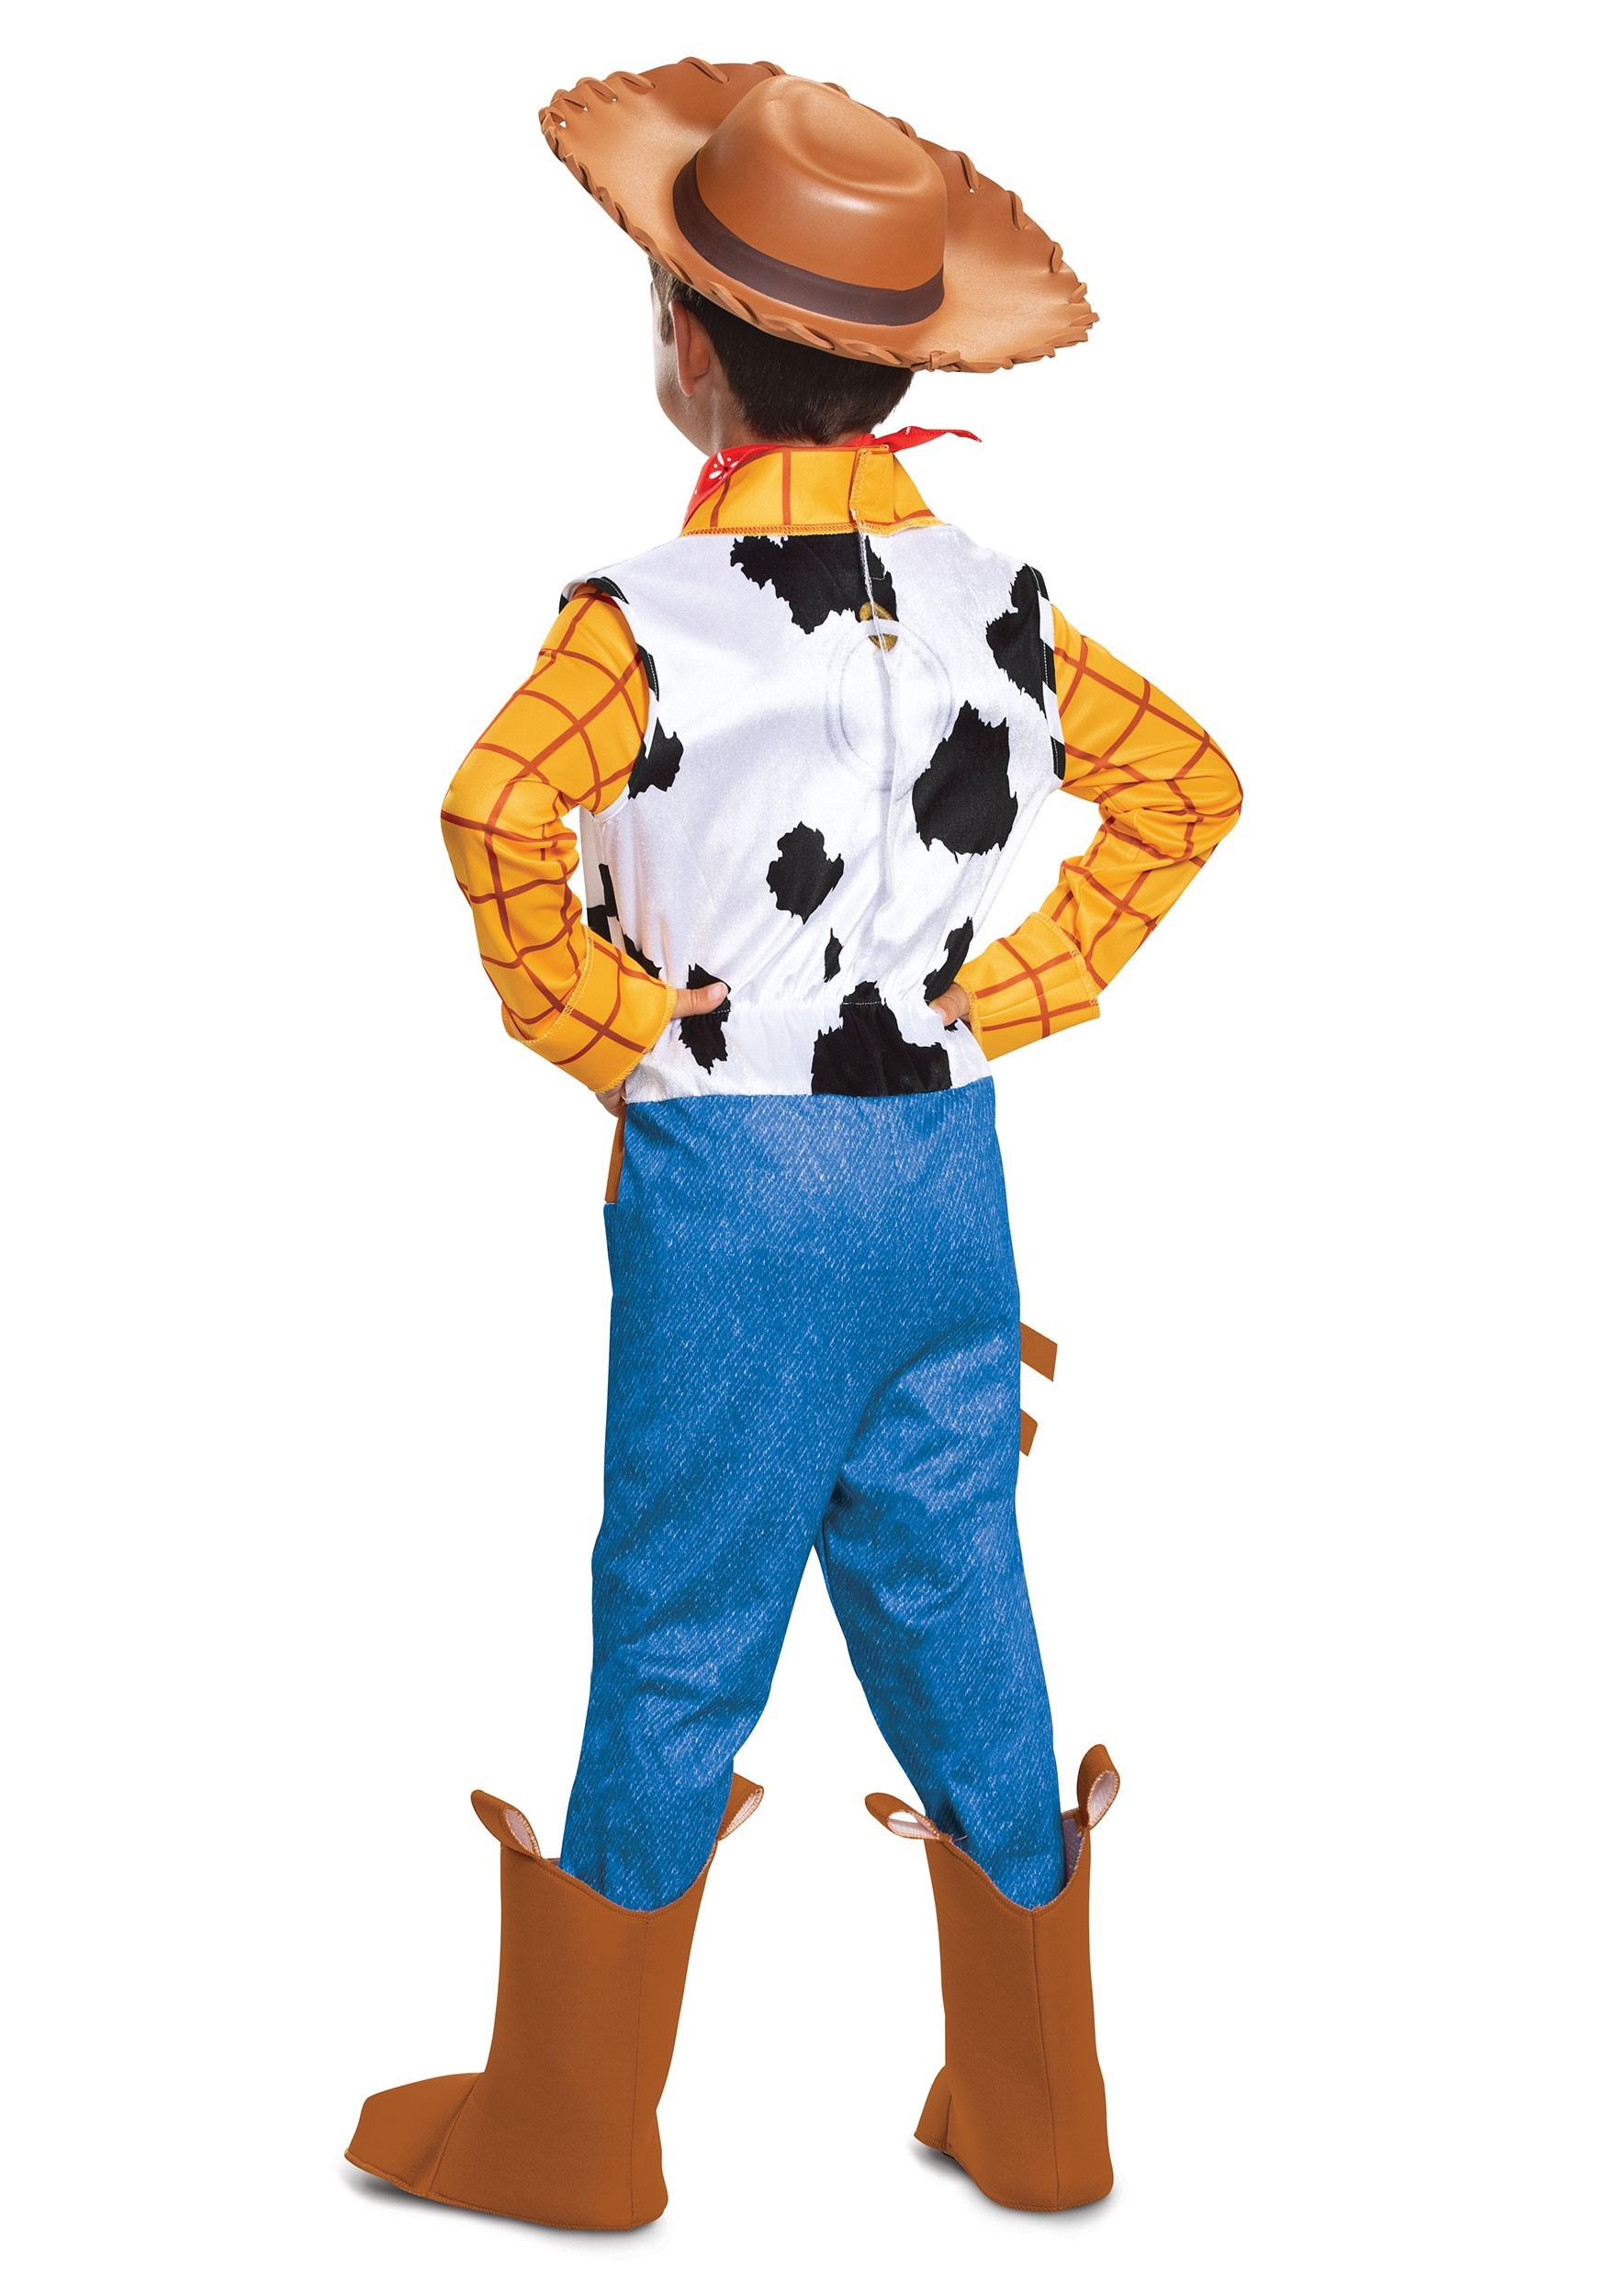 Disfraz de Woody Deluxe de Toy Story para niños pequeños